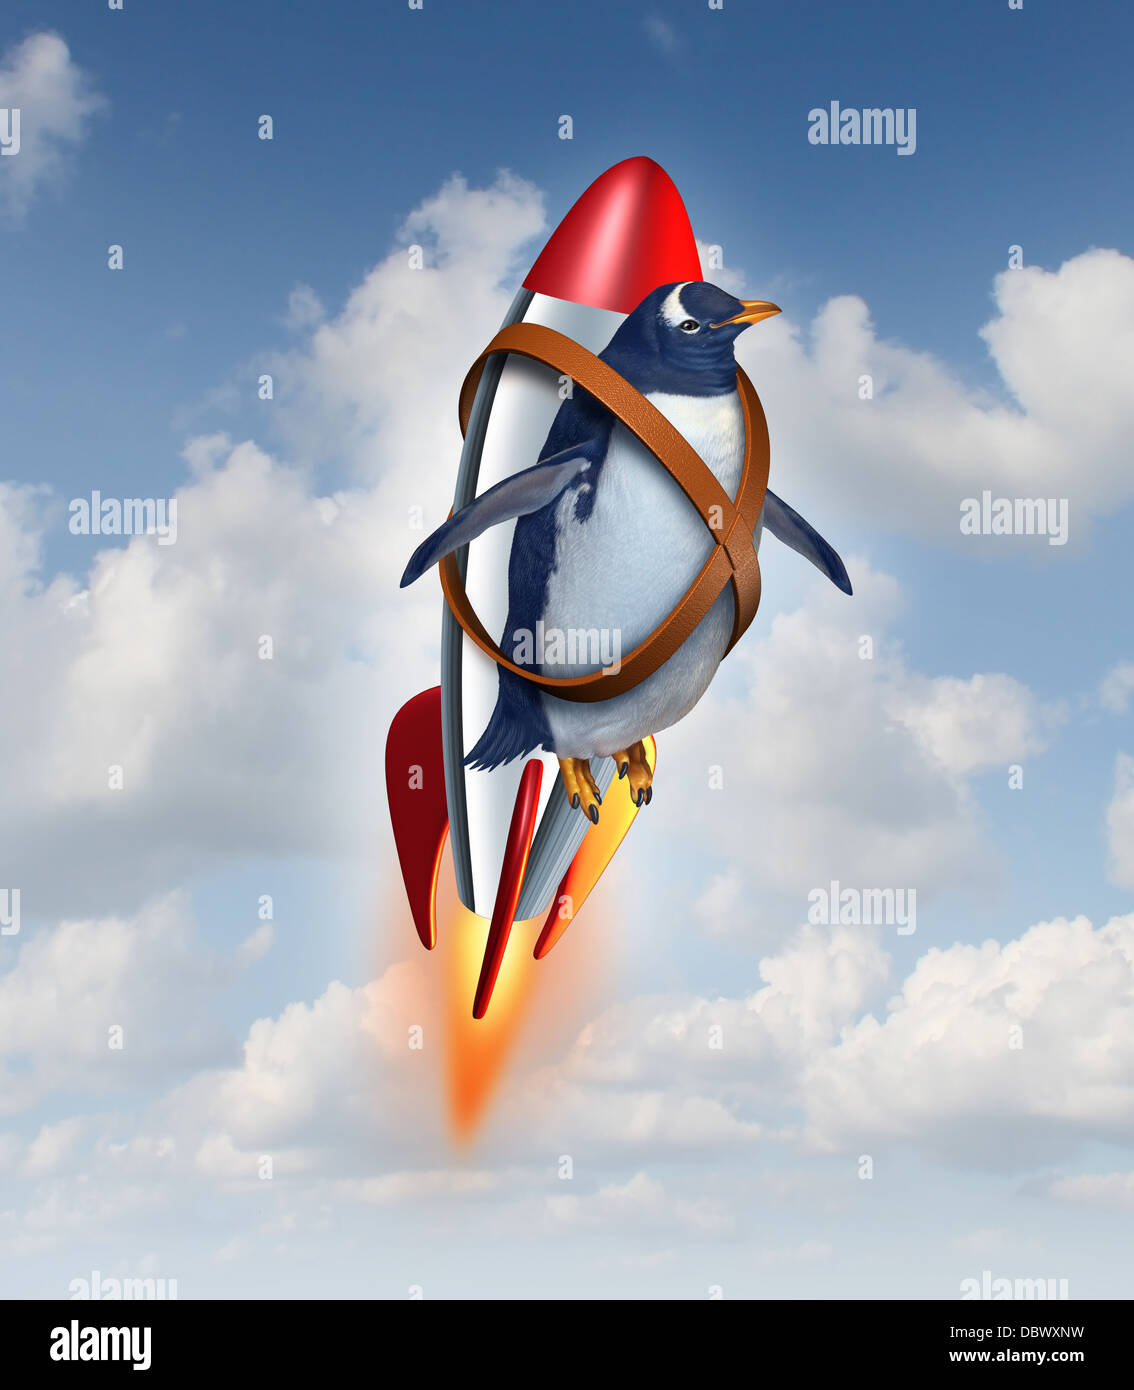 Entschlossen, erfolgreich zu sein und zu überwinden Grenzen-Konzept als realistische Pinguin fliegen in der Luft mit einer Rakete als Geschäft Symbol Leistungspotential und Möglichkeiten in Ihre Fähigkeiten zur Überwindung von Hindernissen. Stockfoto